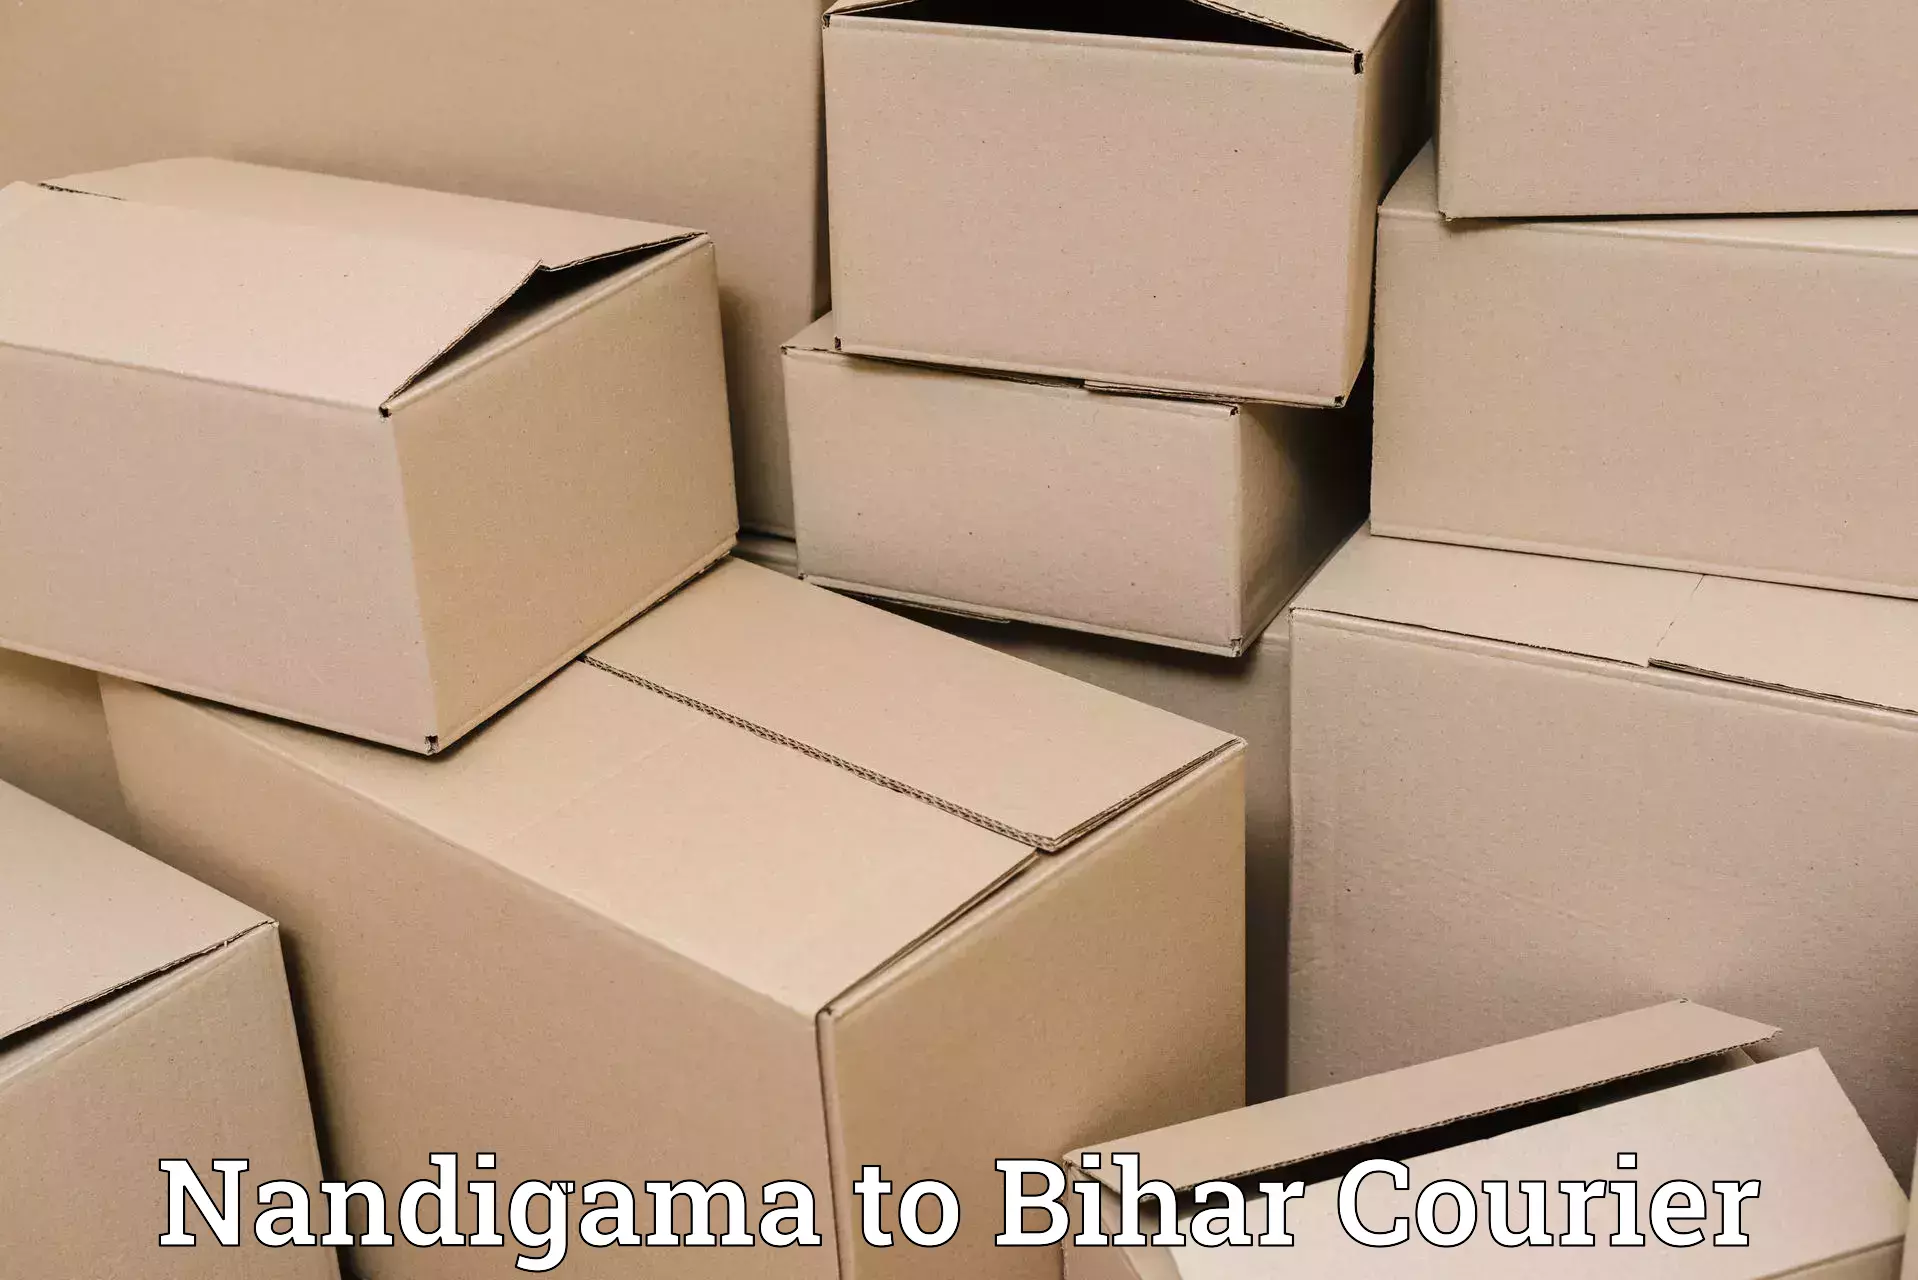 Urgent courier needs Nandigama to Tribeniganj